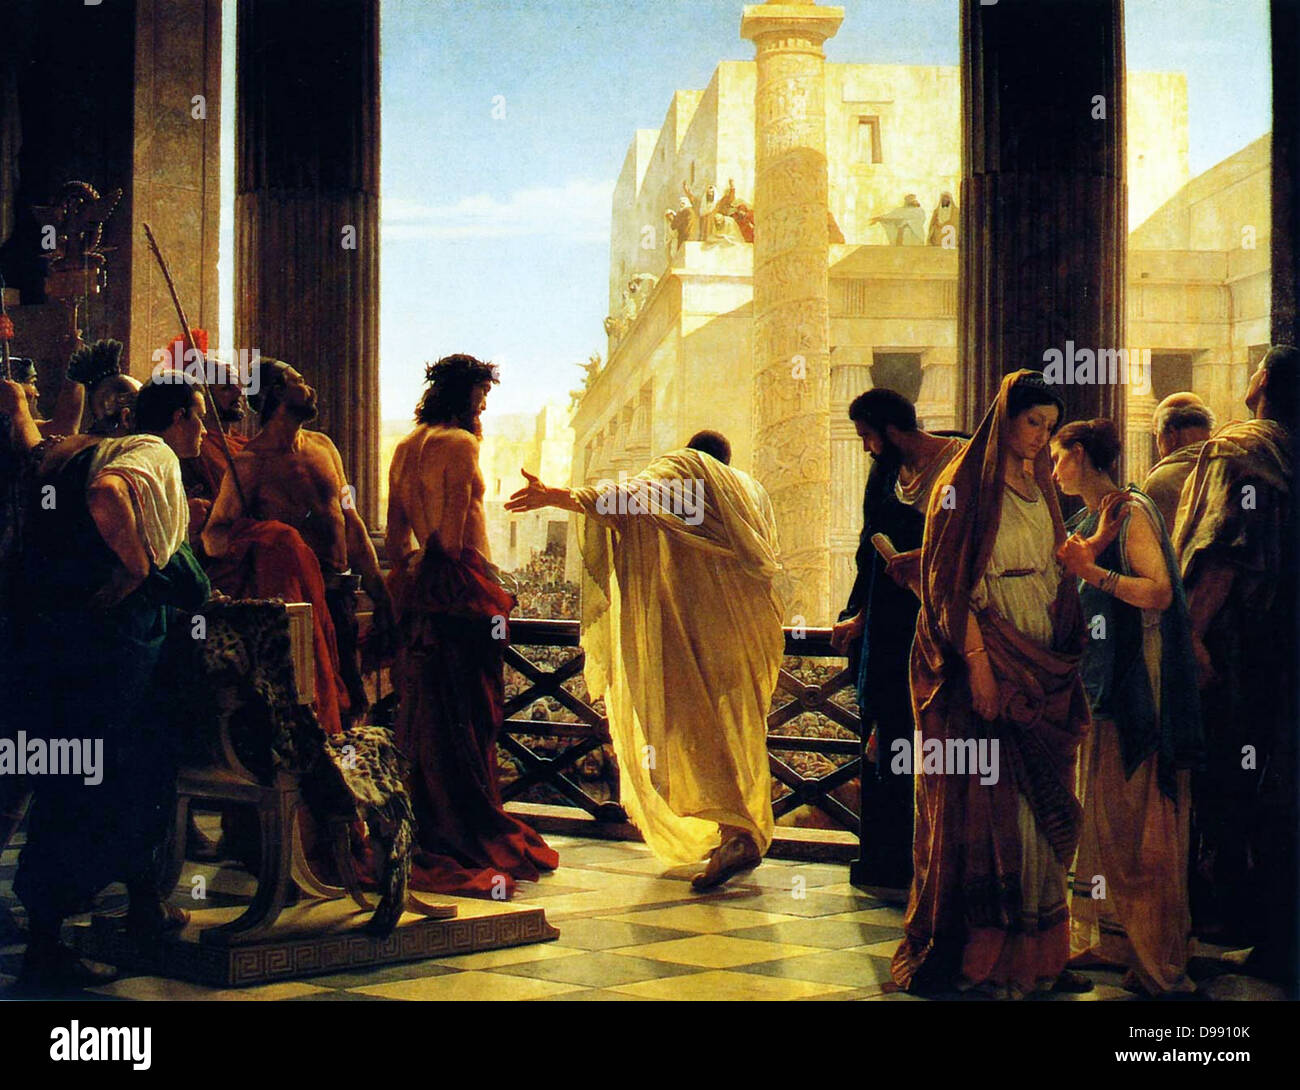 Antonio Ciseri dépeint Ponce Pilate présentant un flagellé Christ au peuple Ecce homo ! (Voici l'homme). peint au 19e siècle Banque D'Images